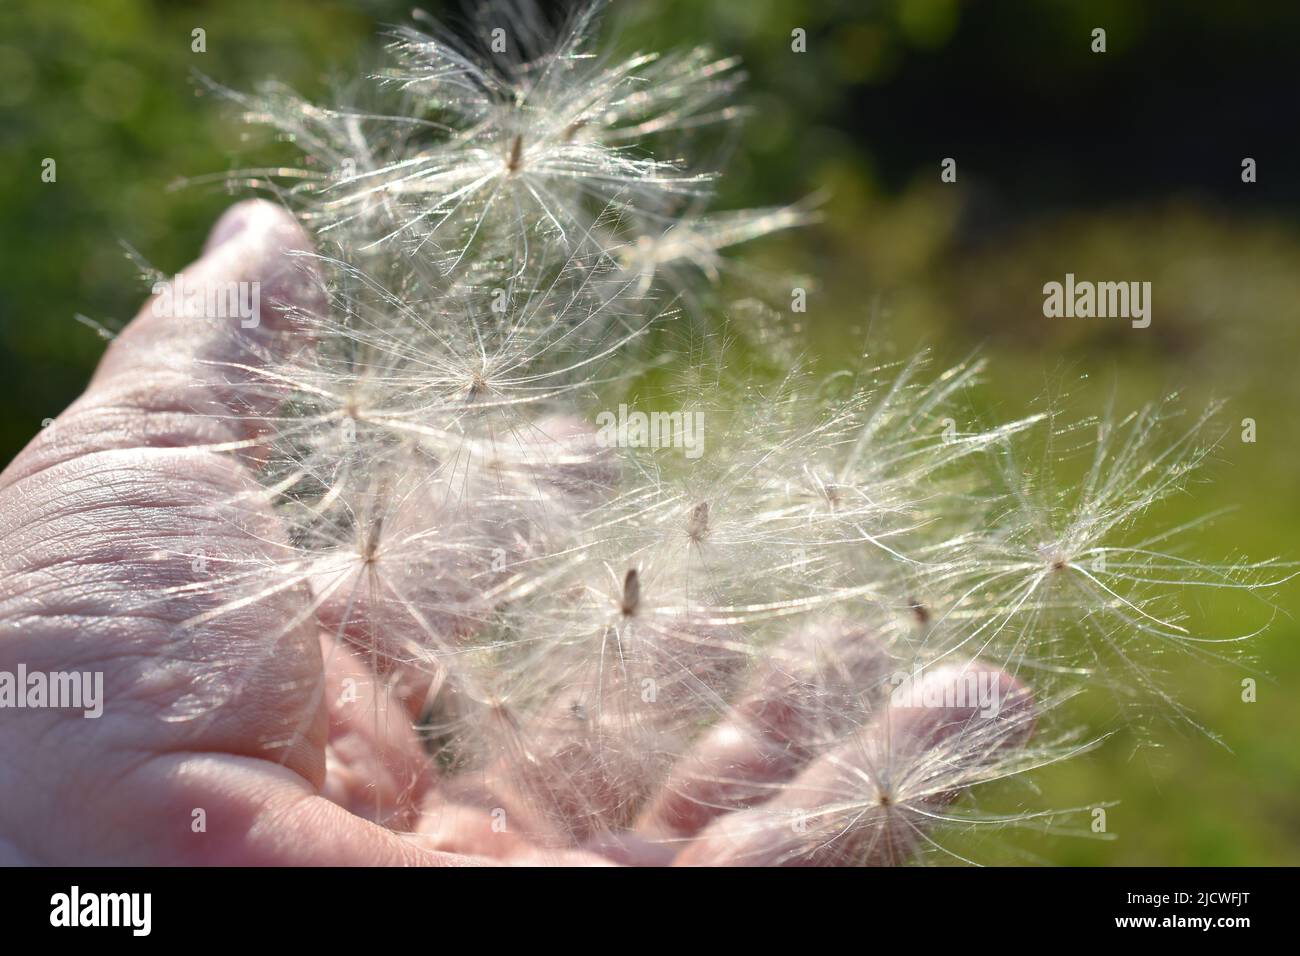 Mano sosteniendo la dispersión del viento de la semilla del cardo volador de la planta Foto de stock